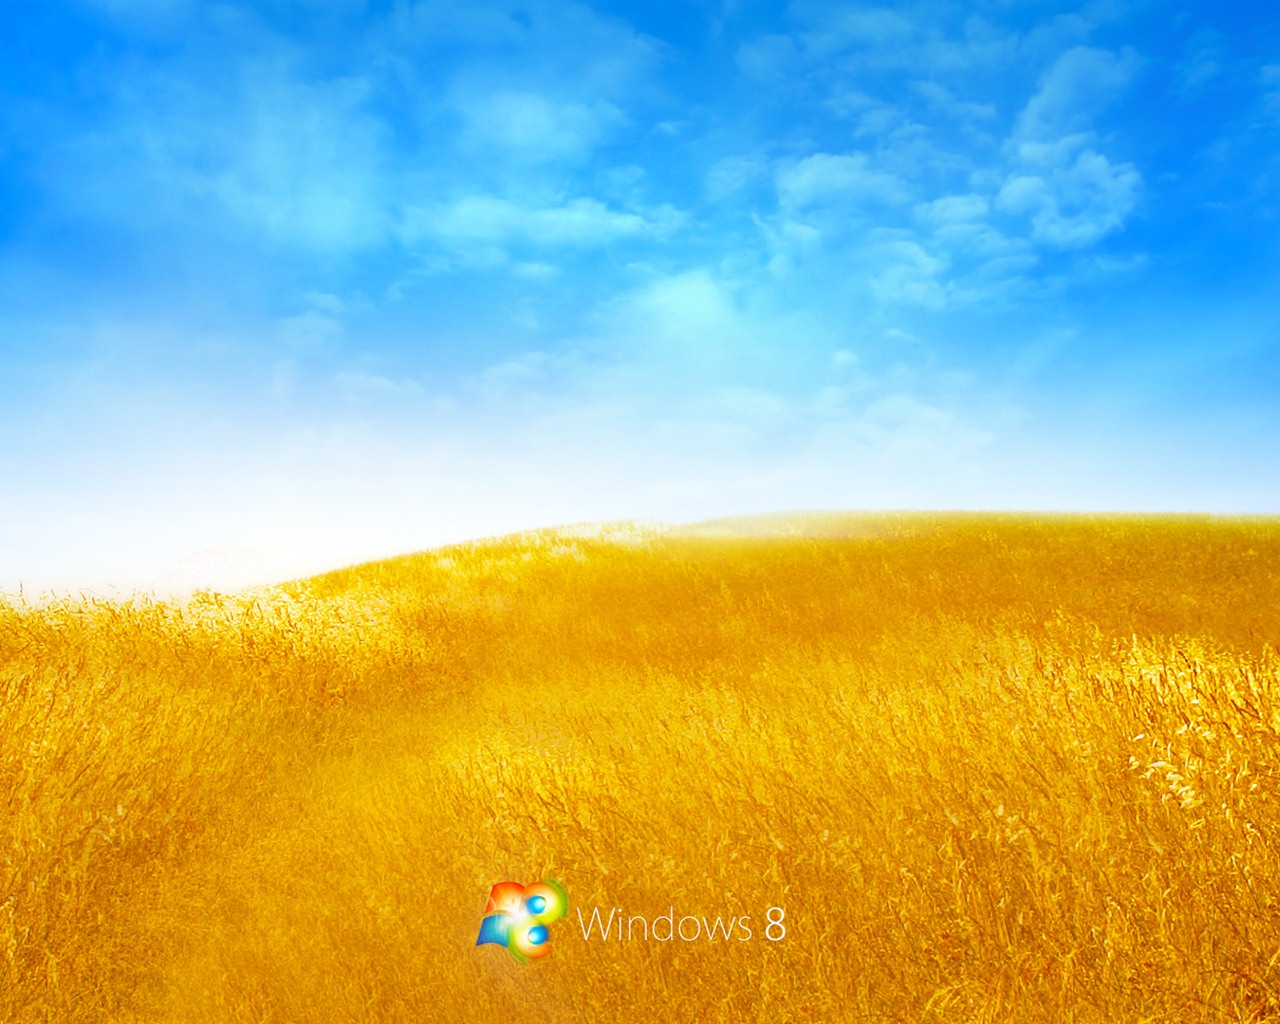 Windows 8 Theme Wallpaper (2) #16 - 1280x1024